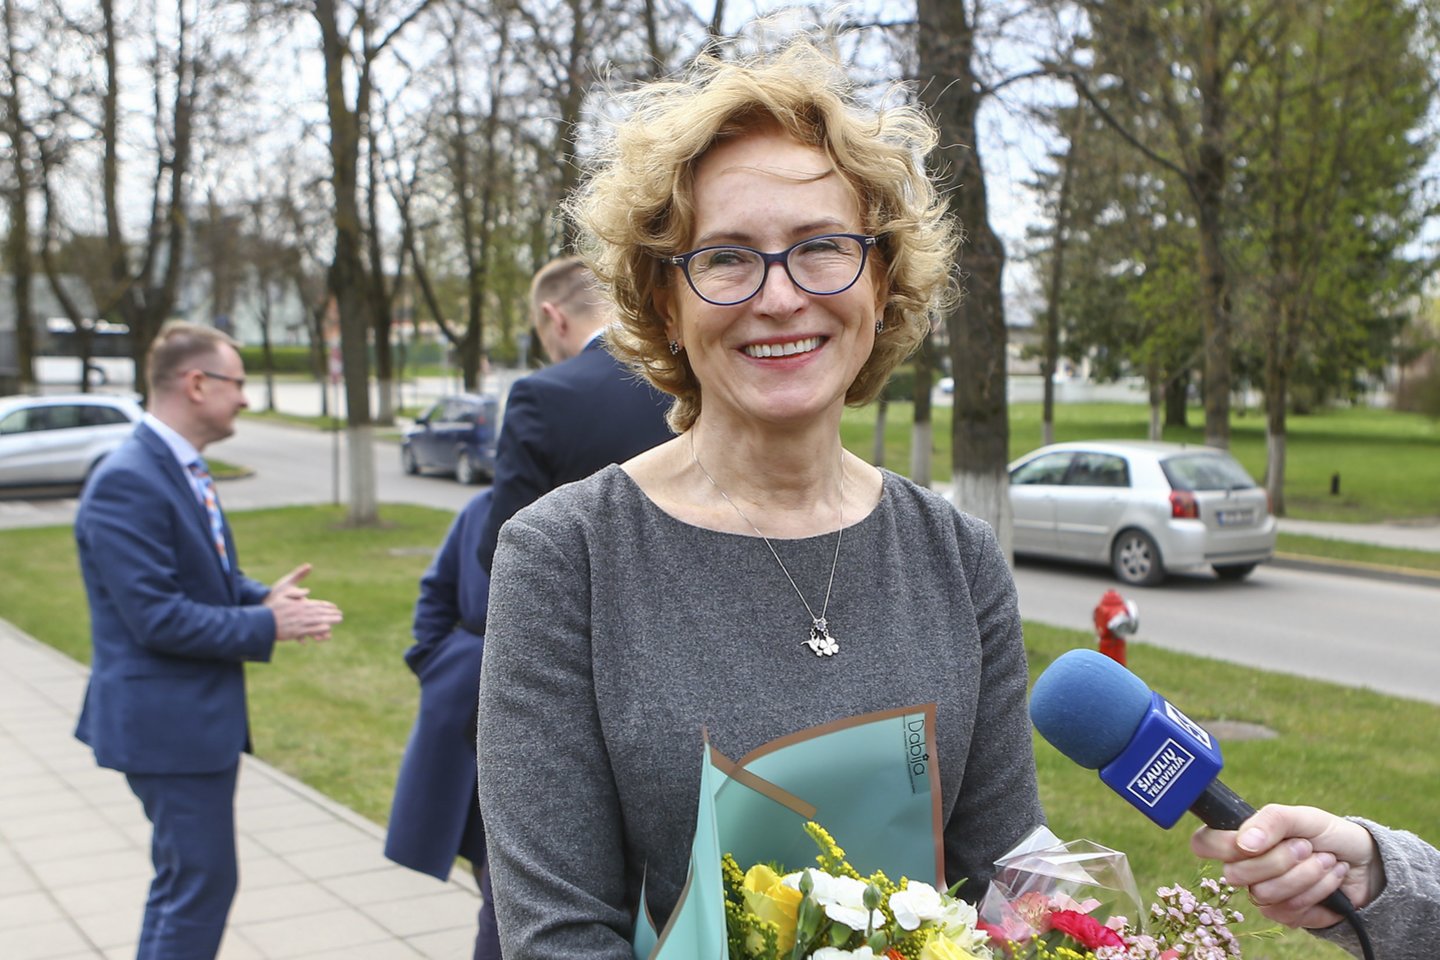  Respublikinei Šiaulių ligoninei metus vadovavusi Č.Špūrienė nusprendė grįžti į sostinę.<br> G.Šiupario nuotr.